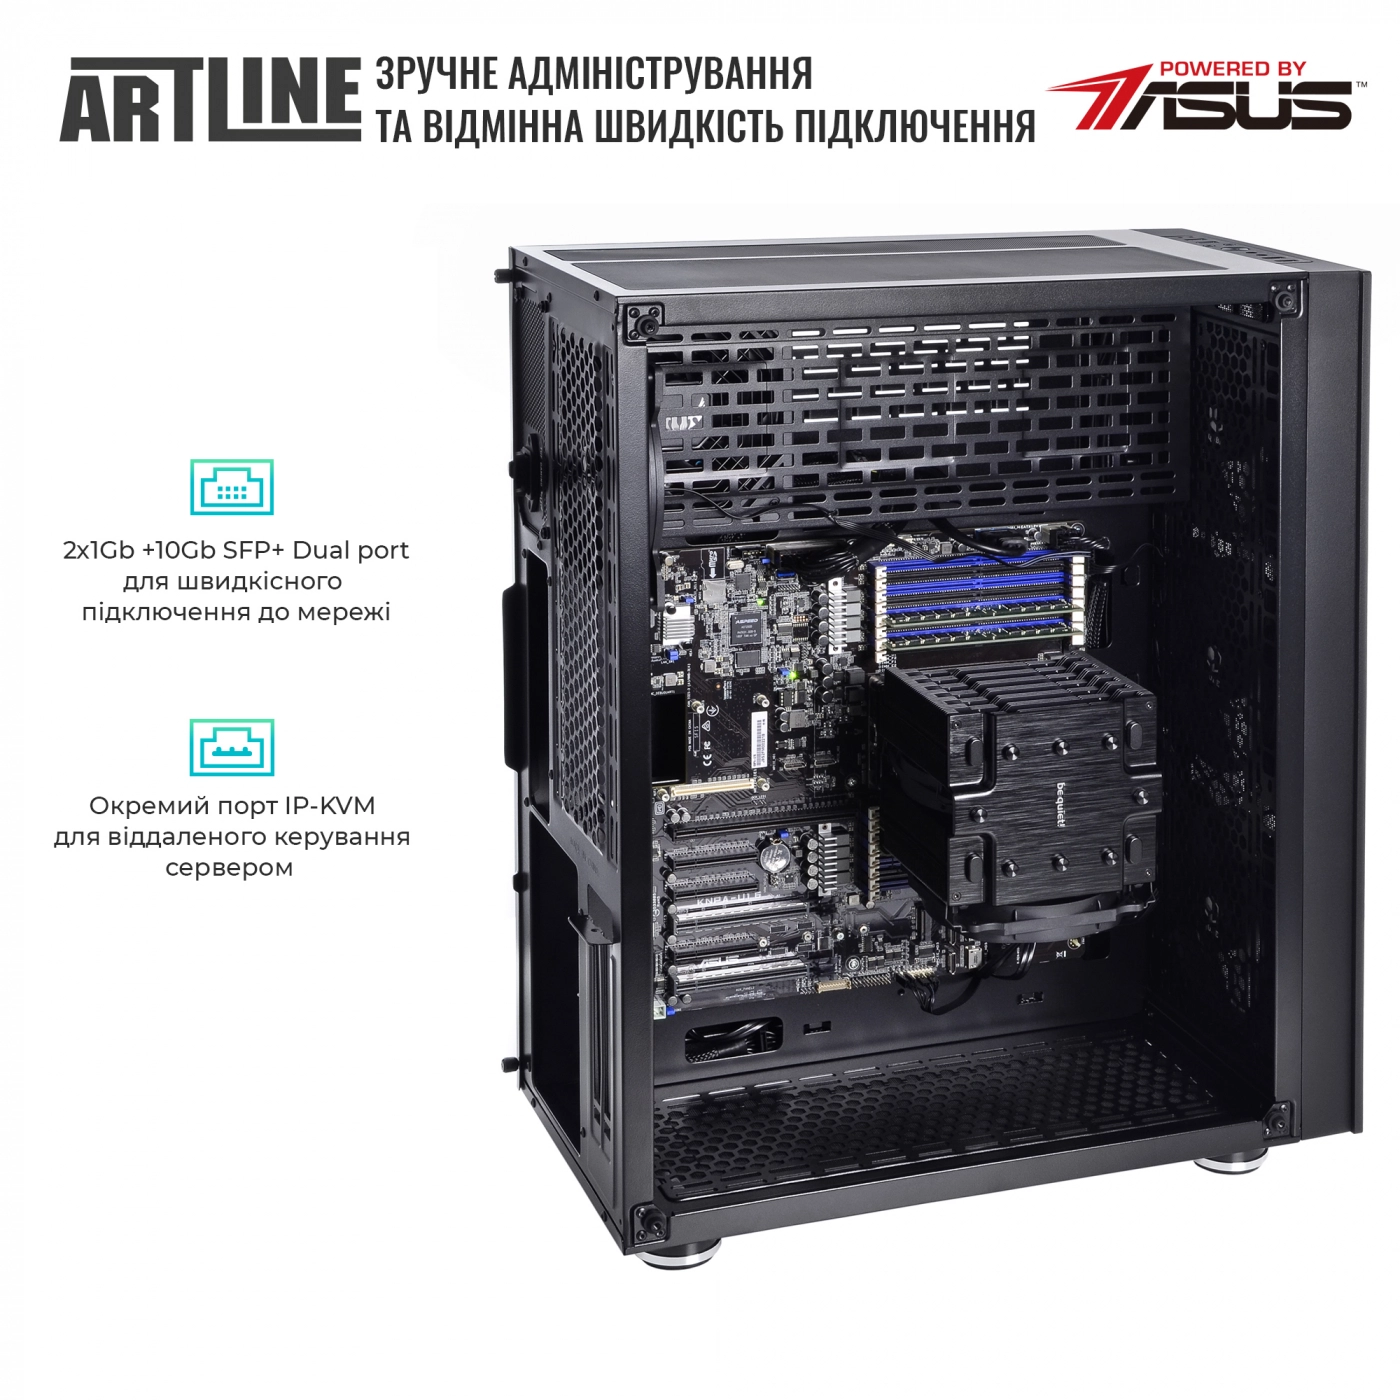 Купить Сервер ARTLINE Business T81v06 - фото 7